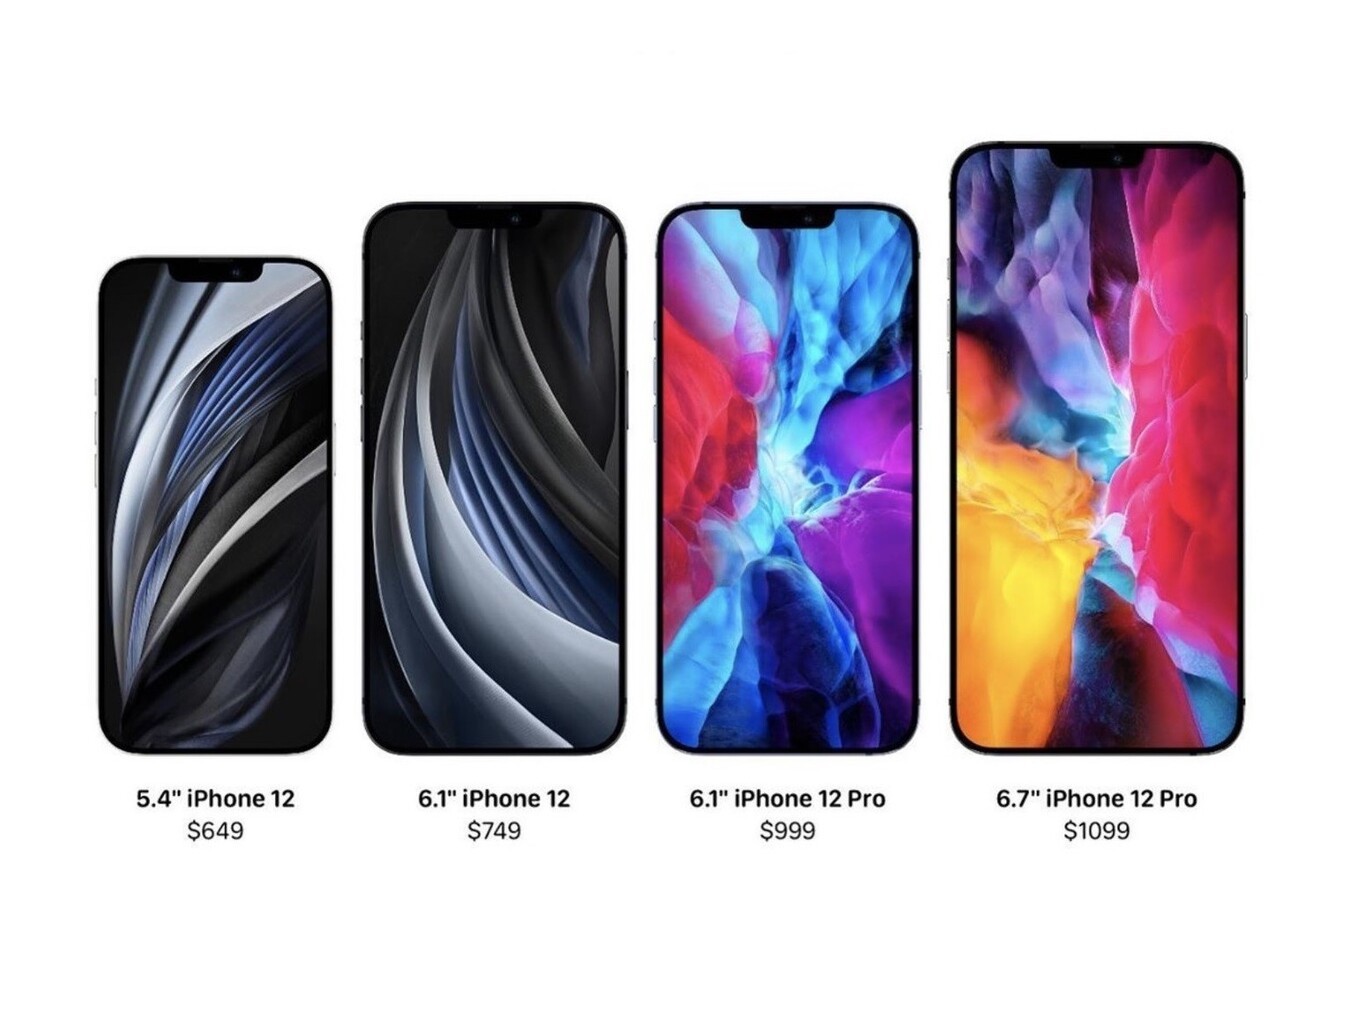 iPhone 12, iPhone 12 mini, iPhone 12 Pro, and iPhone 12 Pro Max